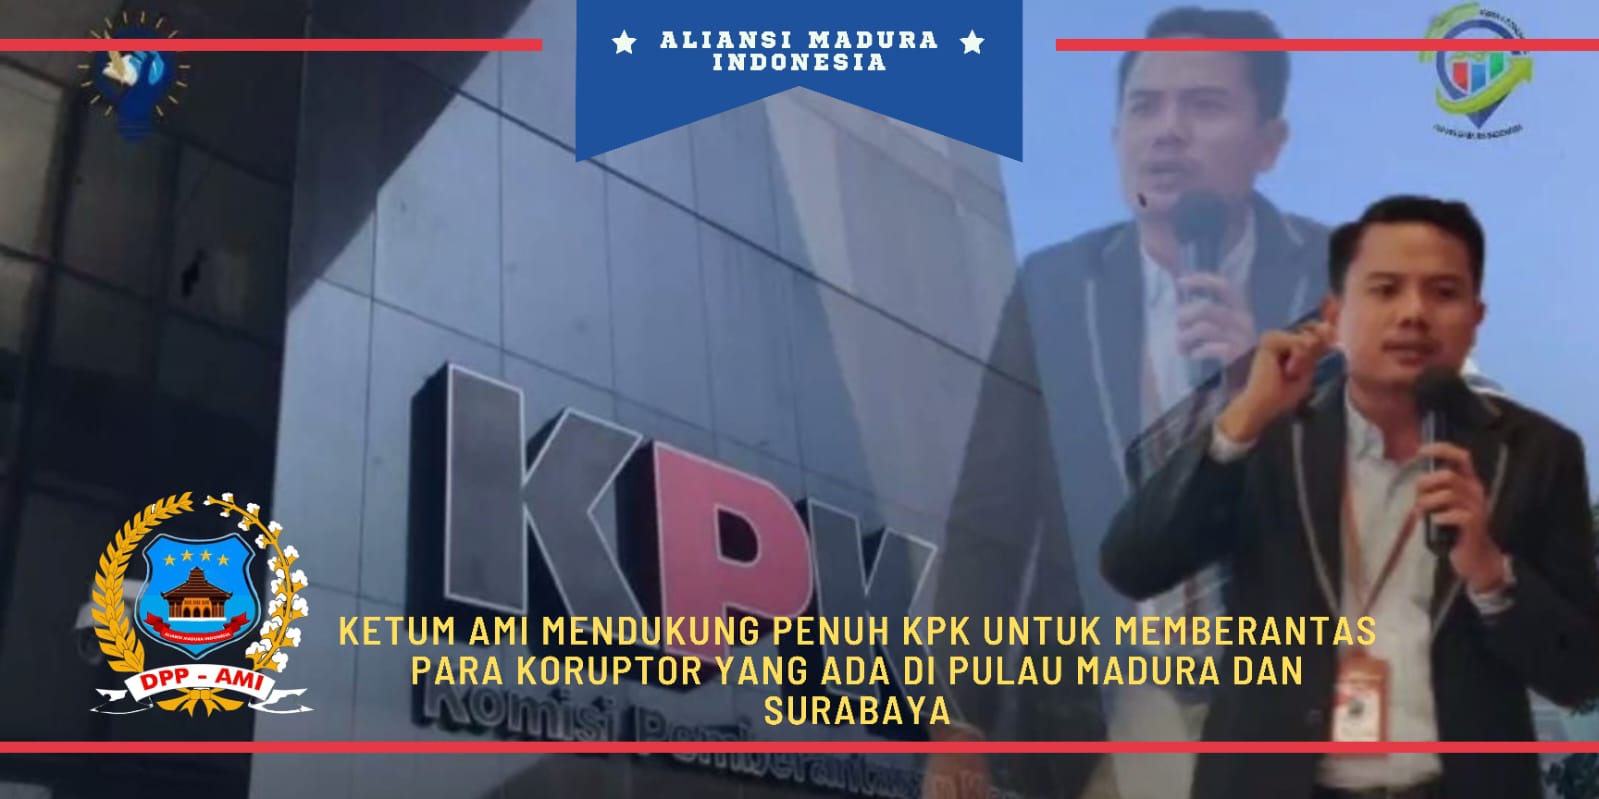 Ketum AMI Mendukung Penuh KPK Untuk Memberantas Para Koruptor Yang Ada di Pulau Madura dan Surabaya